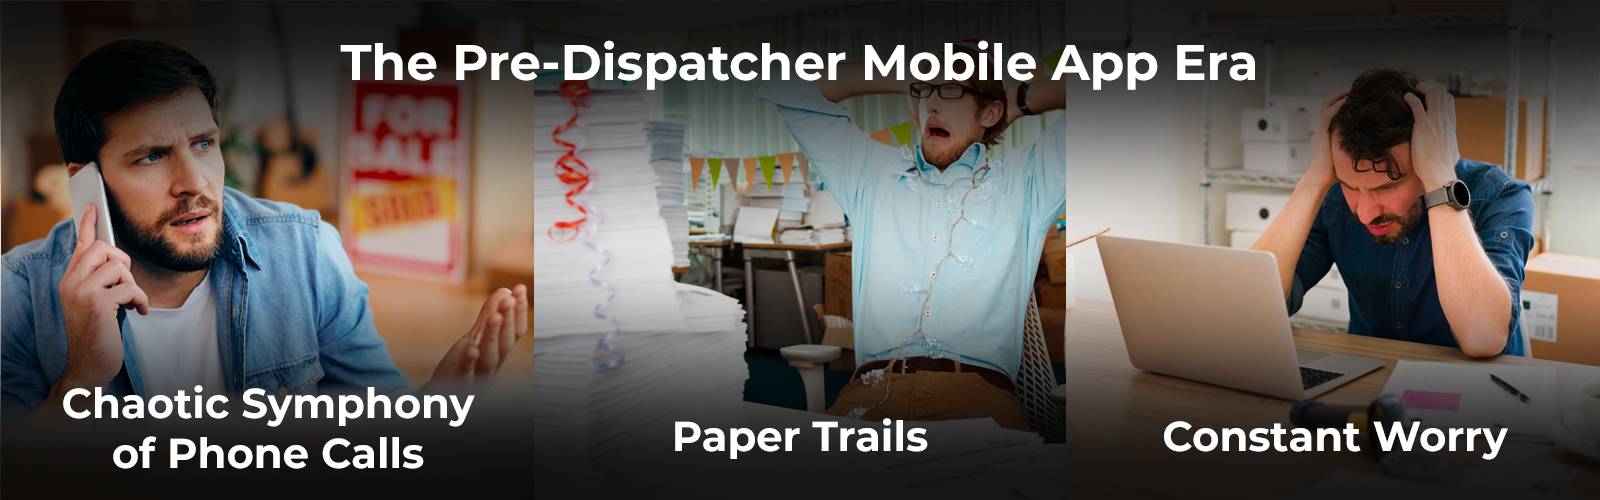 حياة المرسل بدون تطبيق Dispatcher Mobile